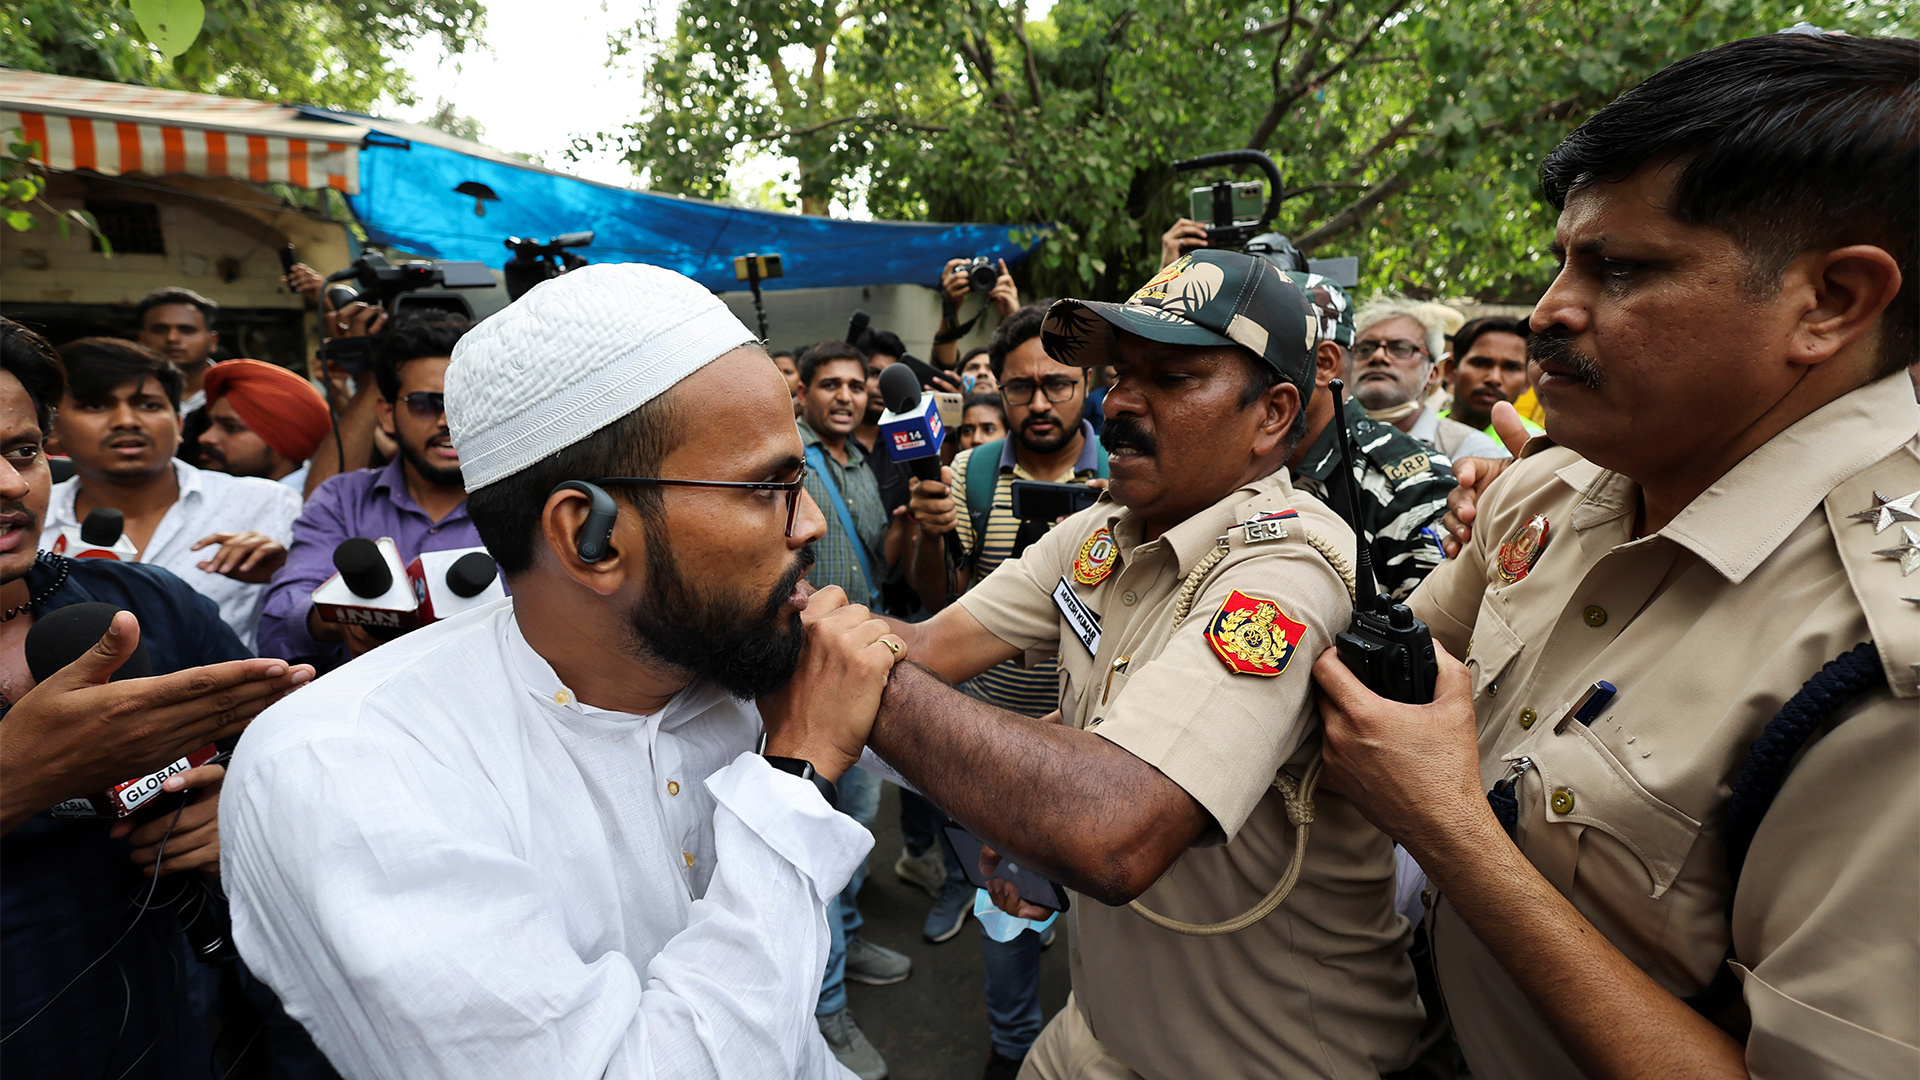 بمقابلات حصرية للقصة بقية.. هكذا يهاجم العنصريون الهندوس المسلمين في الهند - aljazeera.net